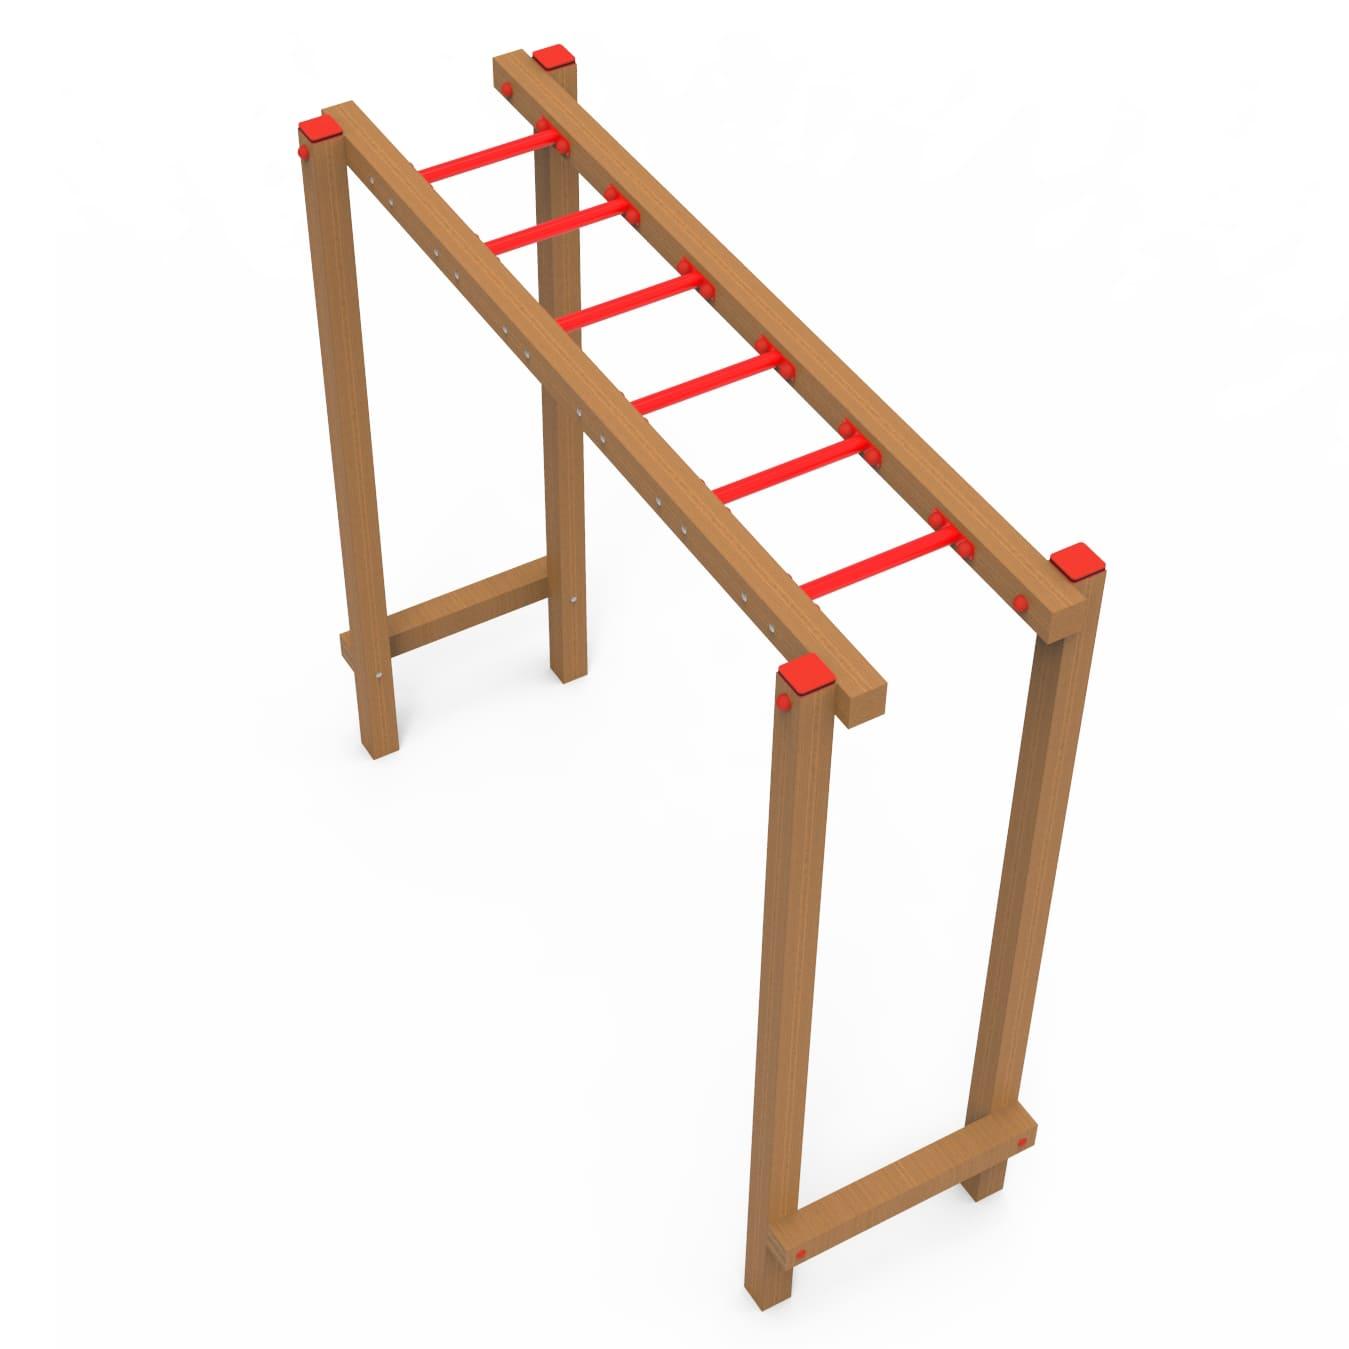 Aparelho para circuito de educação física: Escada horizontal para andar como um macaco.